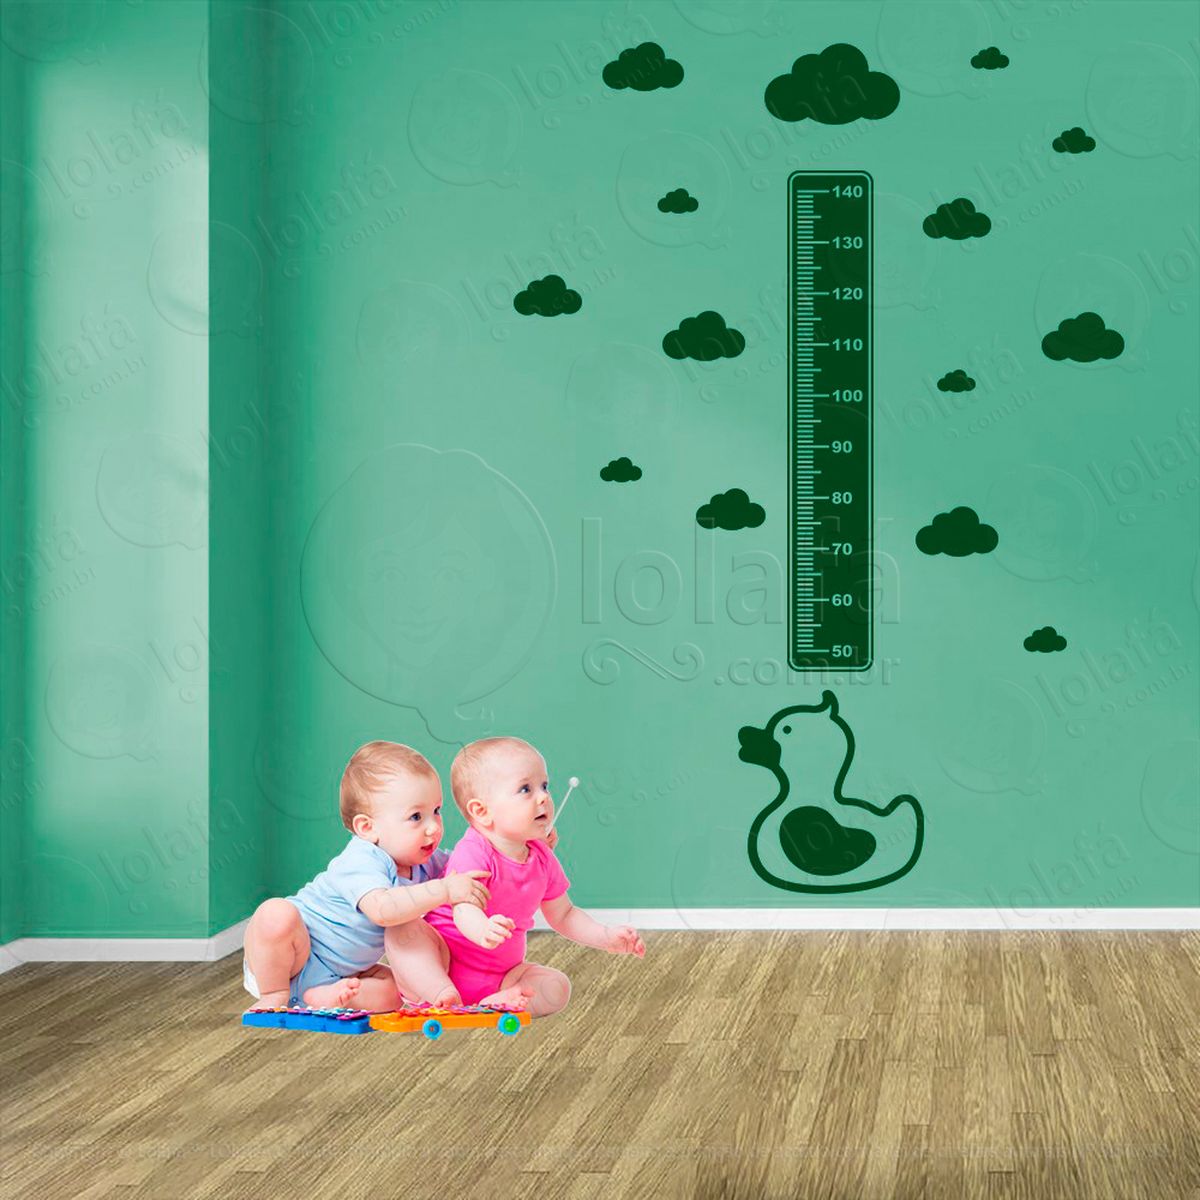 pato e nuvens adesivo régua de crescimento infantil, medidor de altura para quarto, porta e parede - mod:875